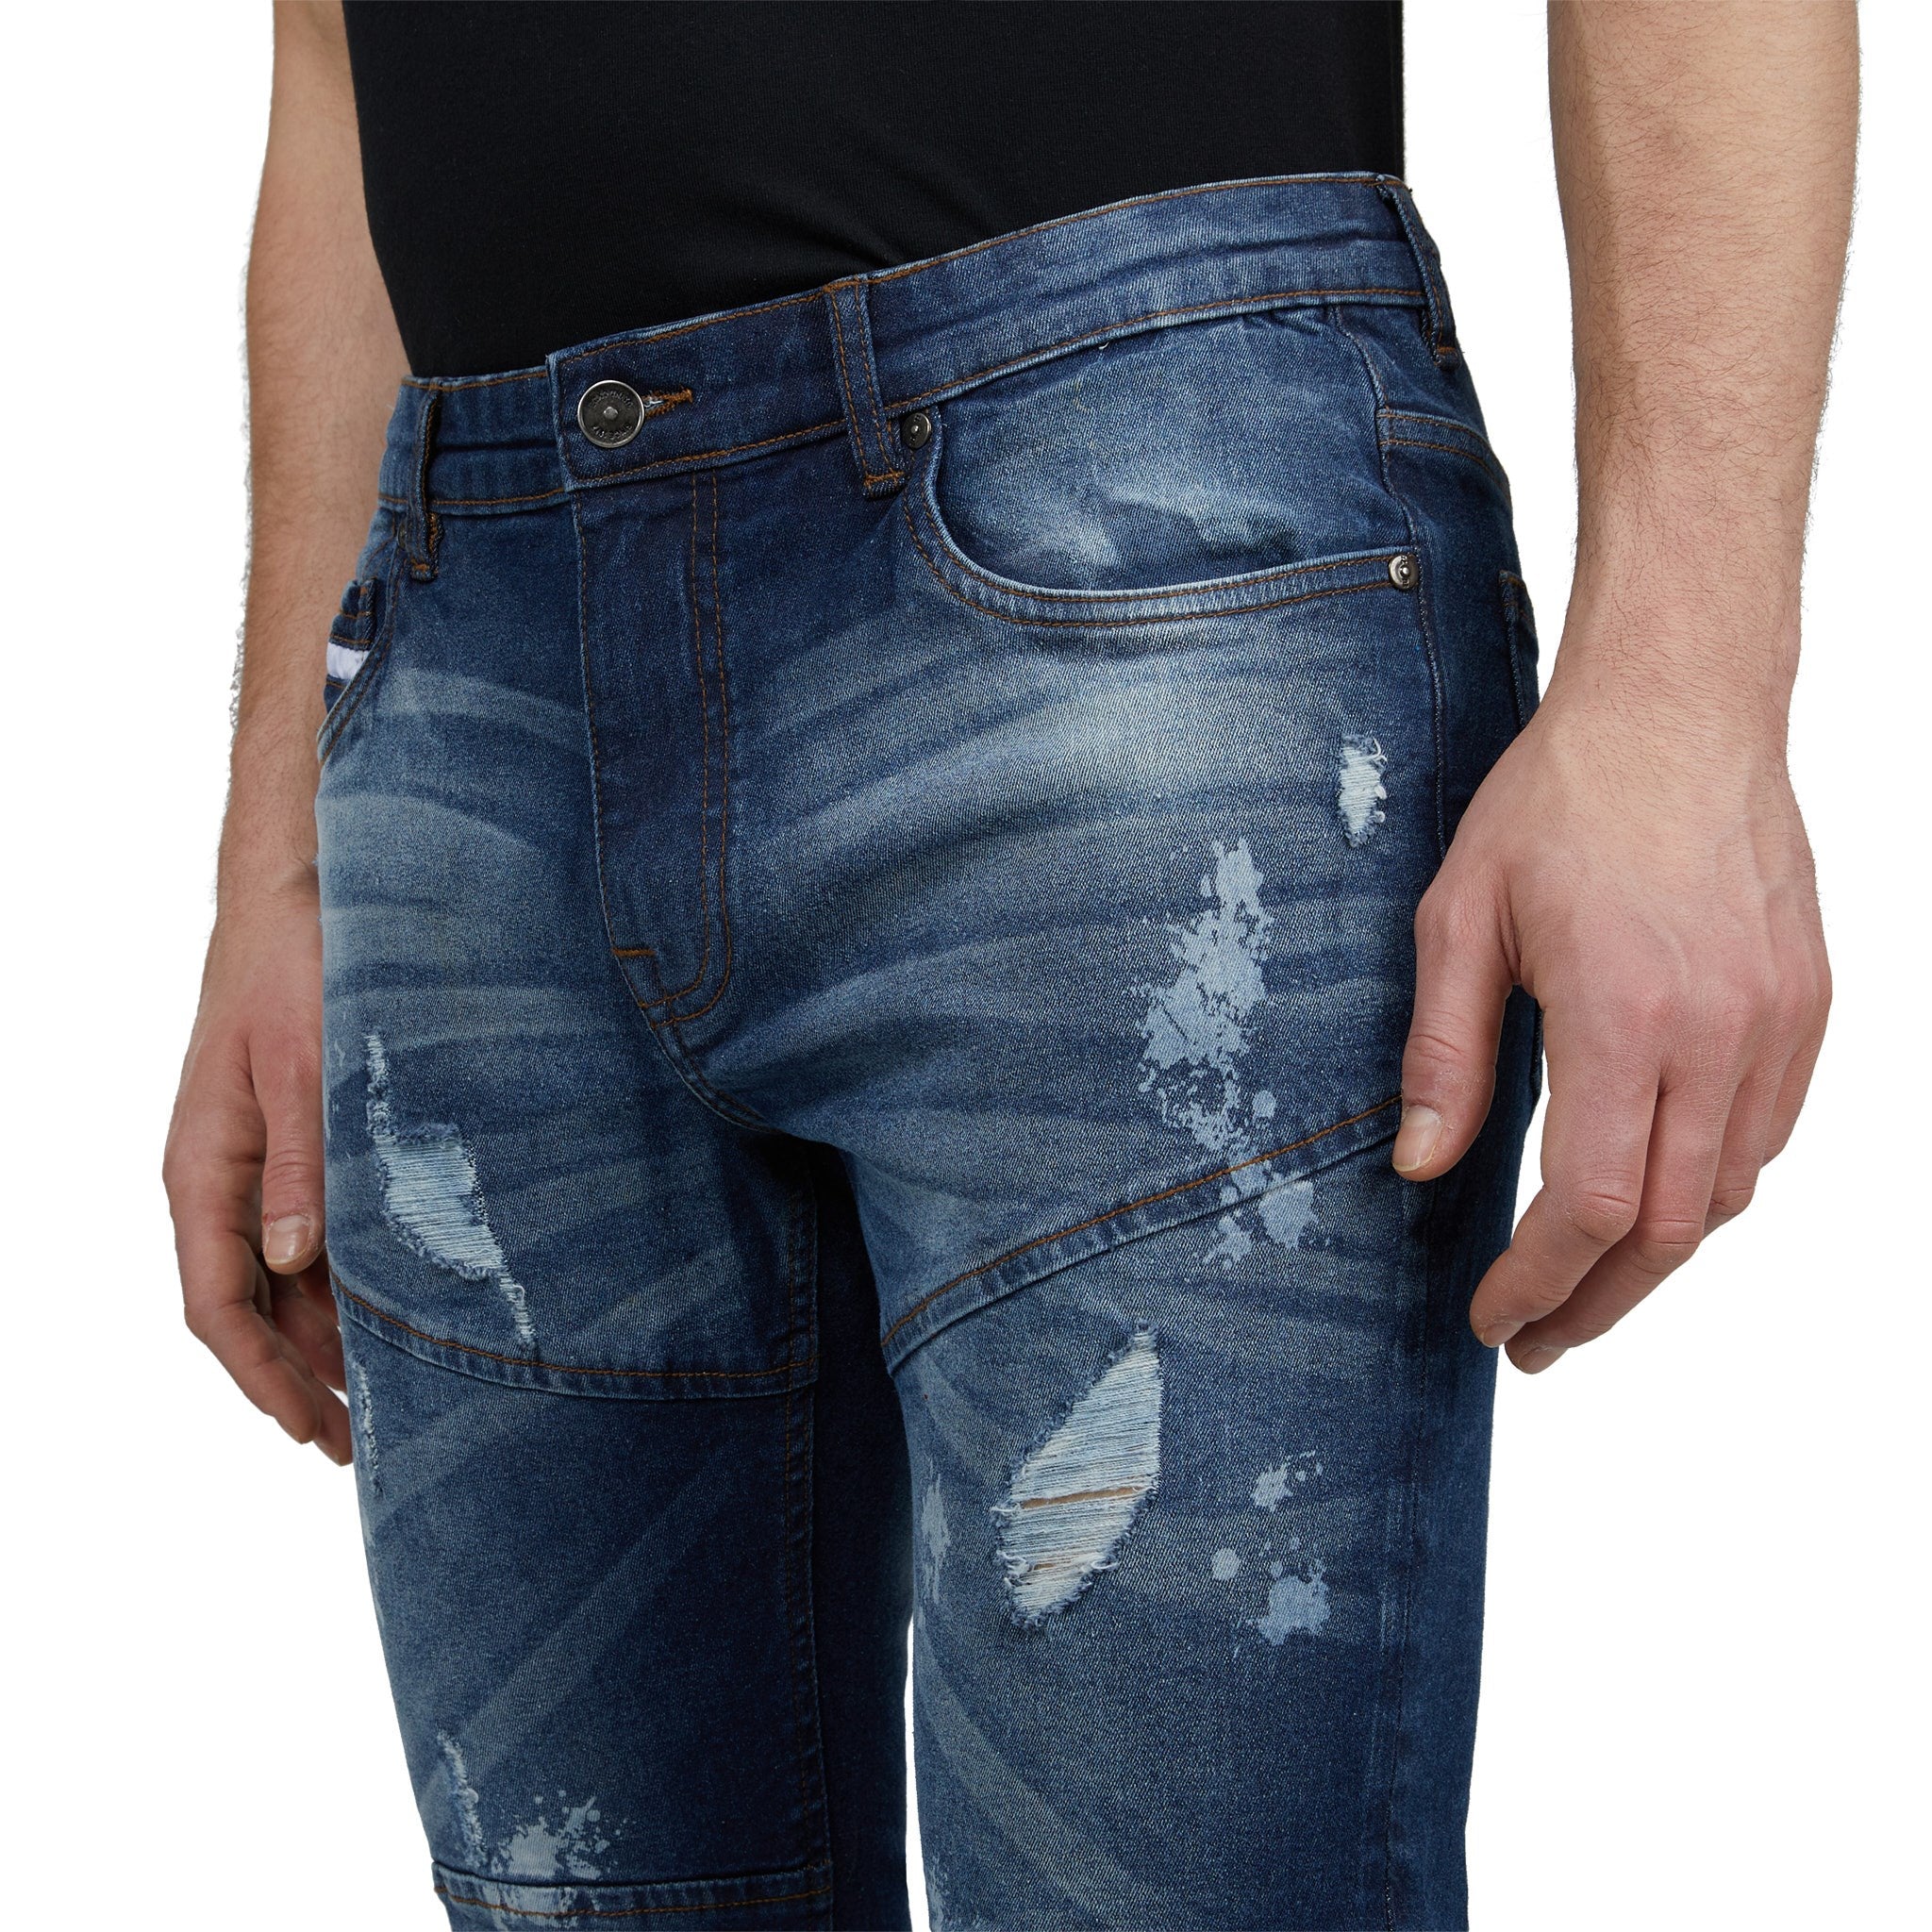 Seamly Splattered Jeans